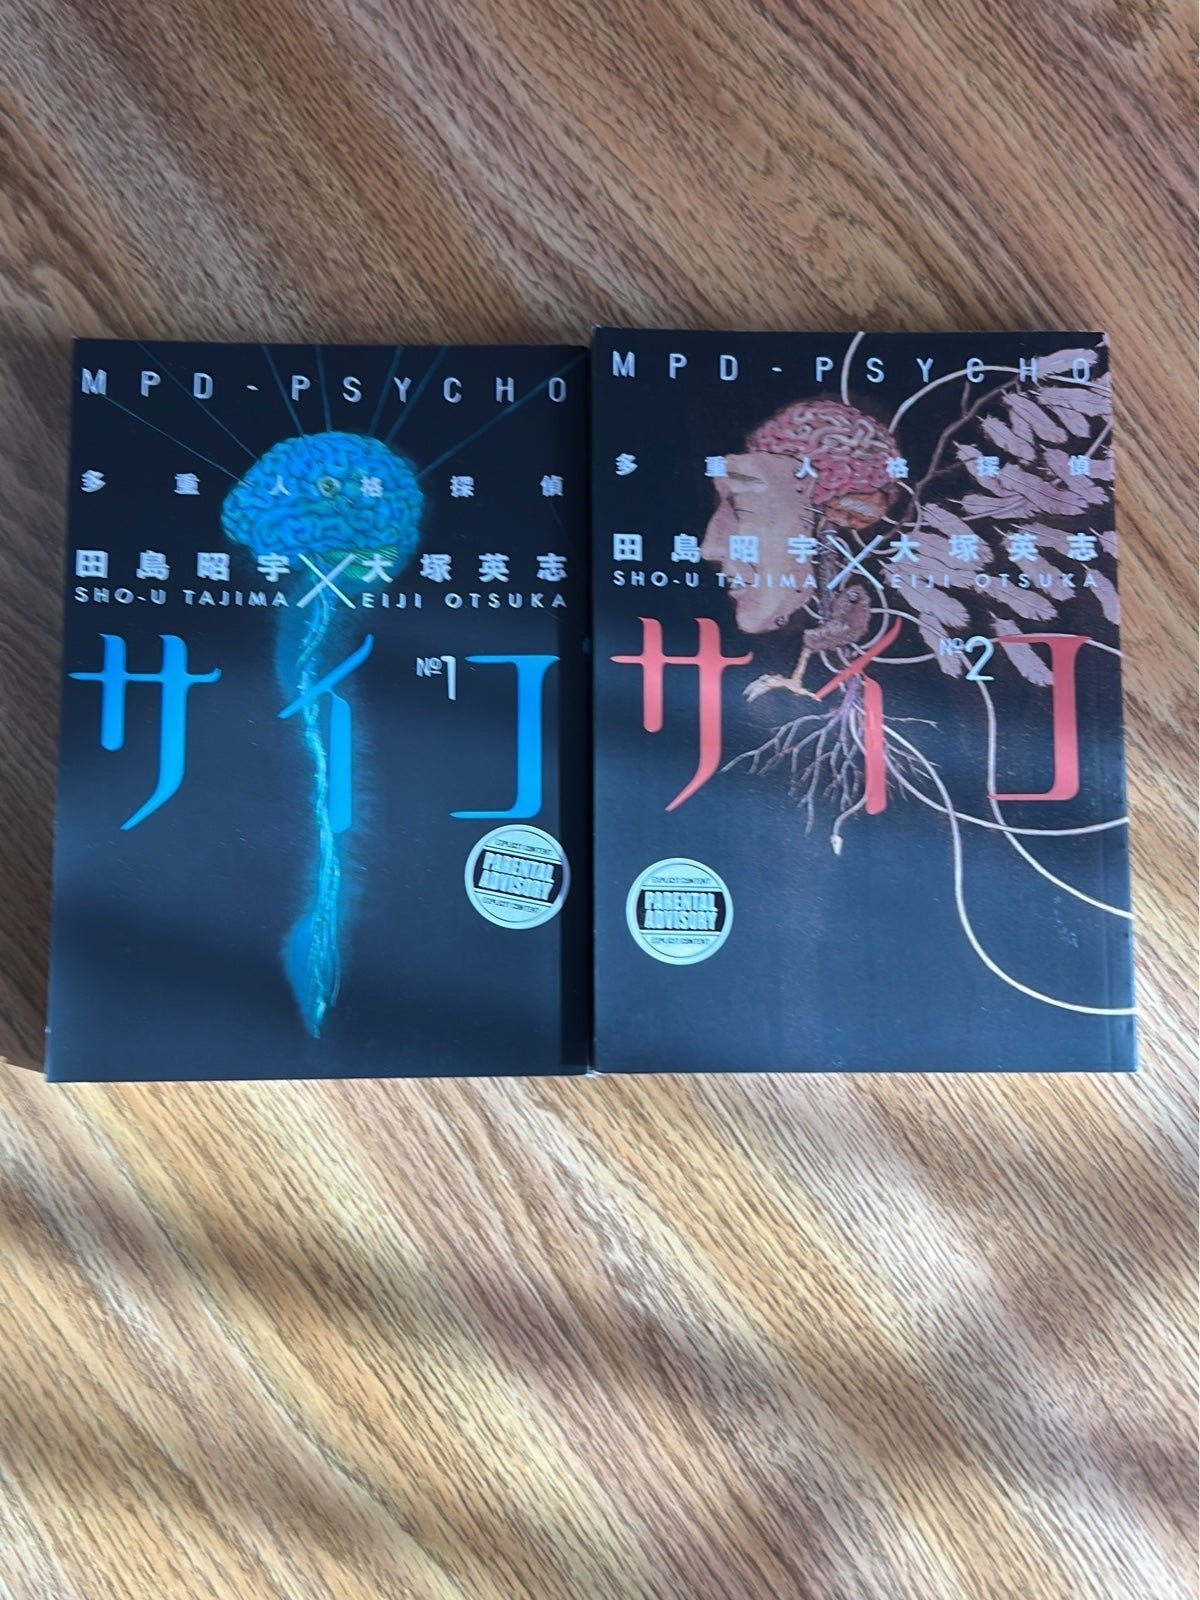 Bundle of 2 Volumes of MPD- Psycho manga QJnGpYQpE